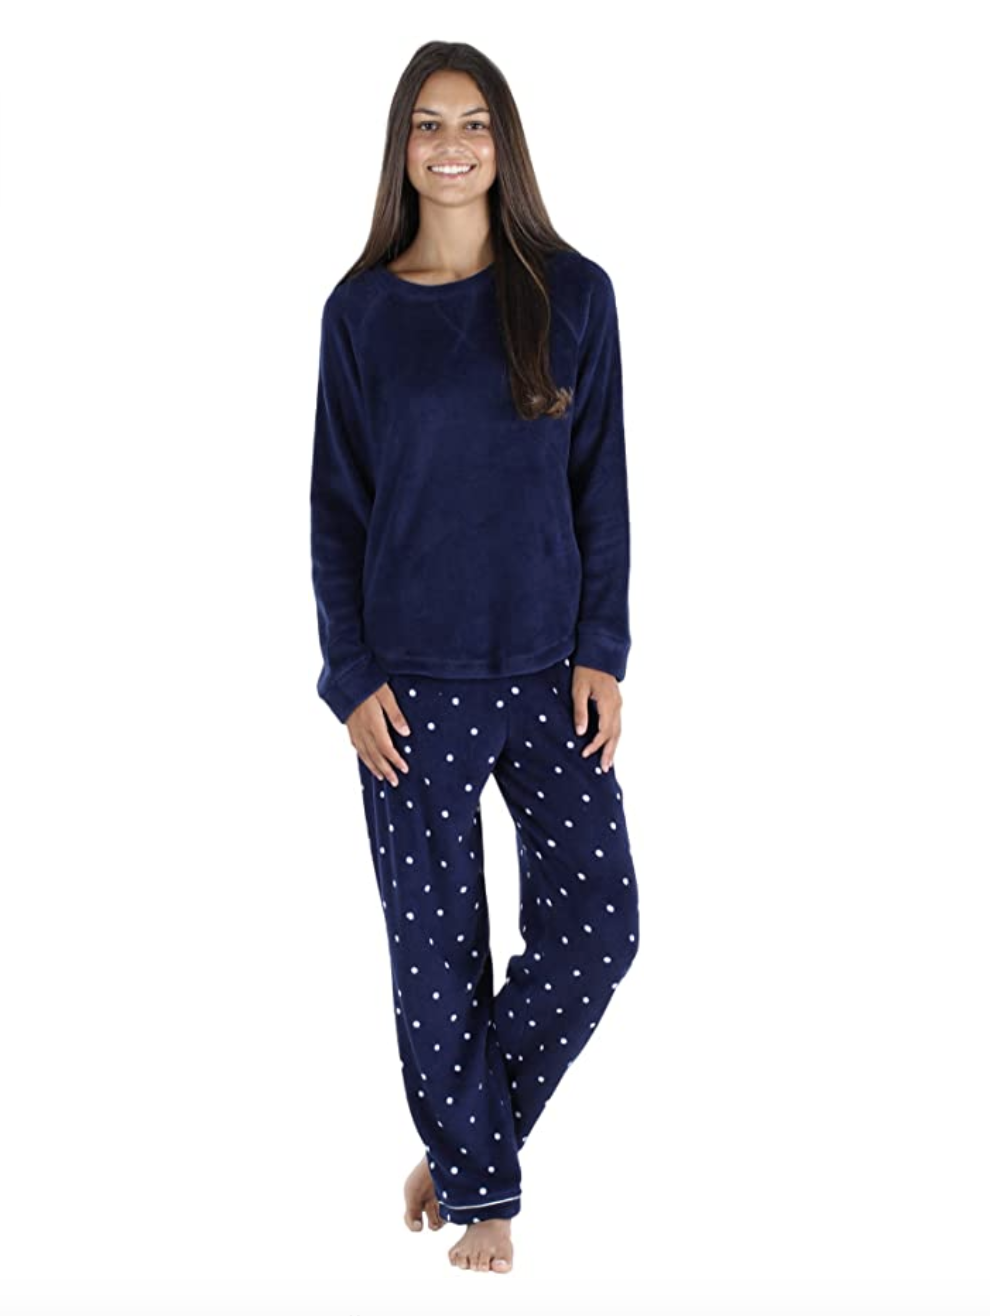 Ladies Pyjama Set Rydale Sleepwear Nightwear Women's Loungewear Loungs Pants PJs 